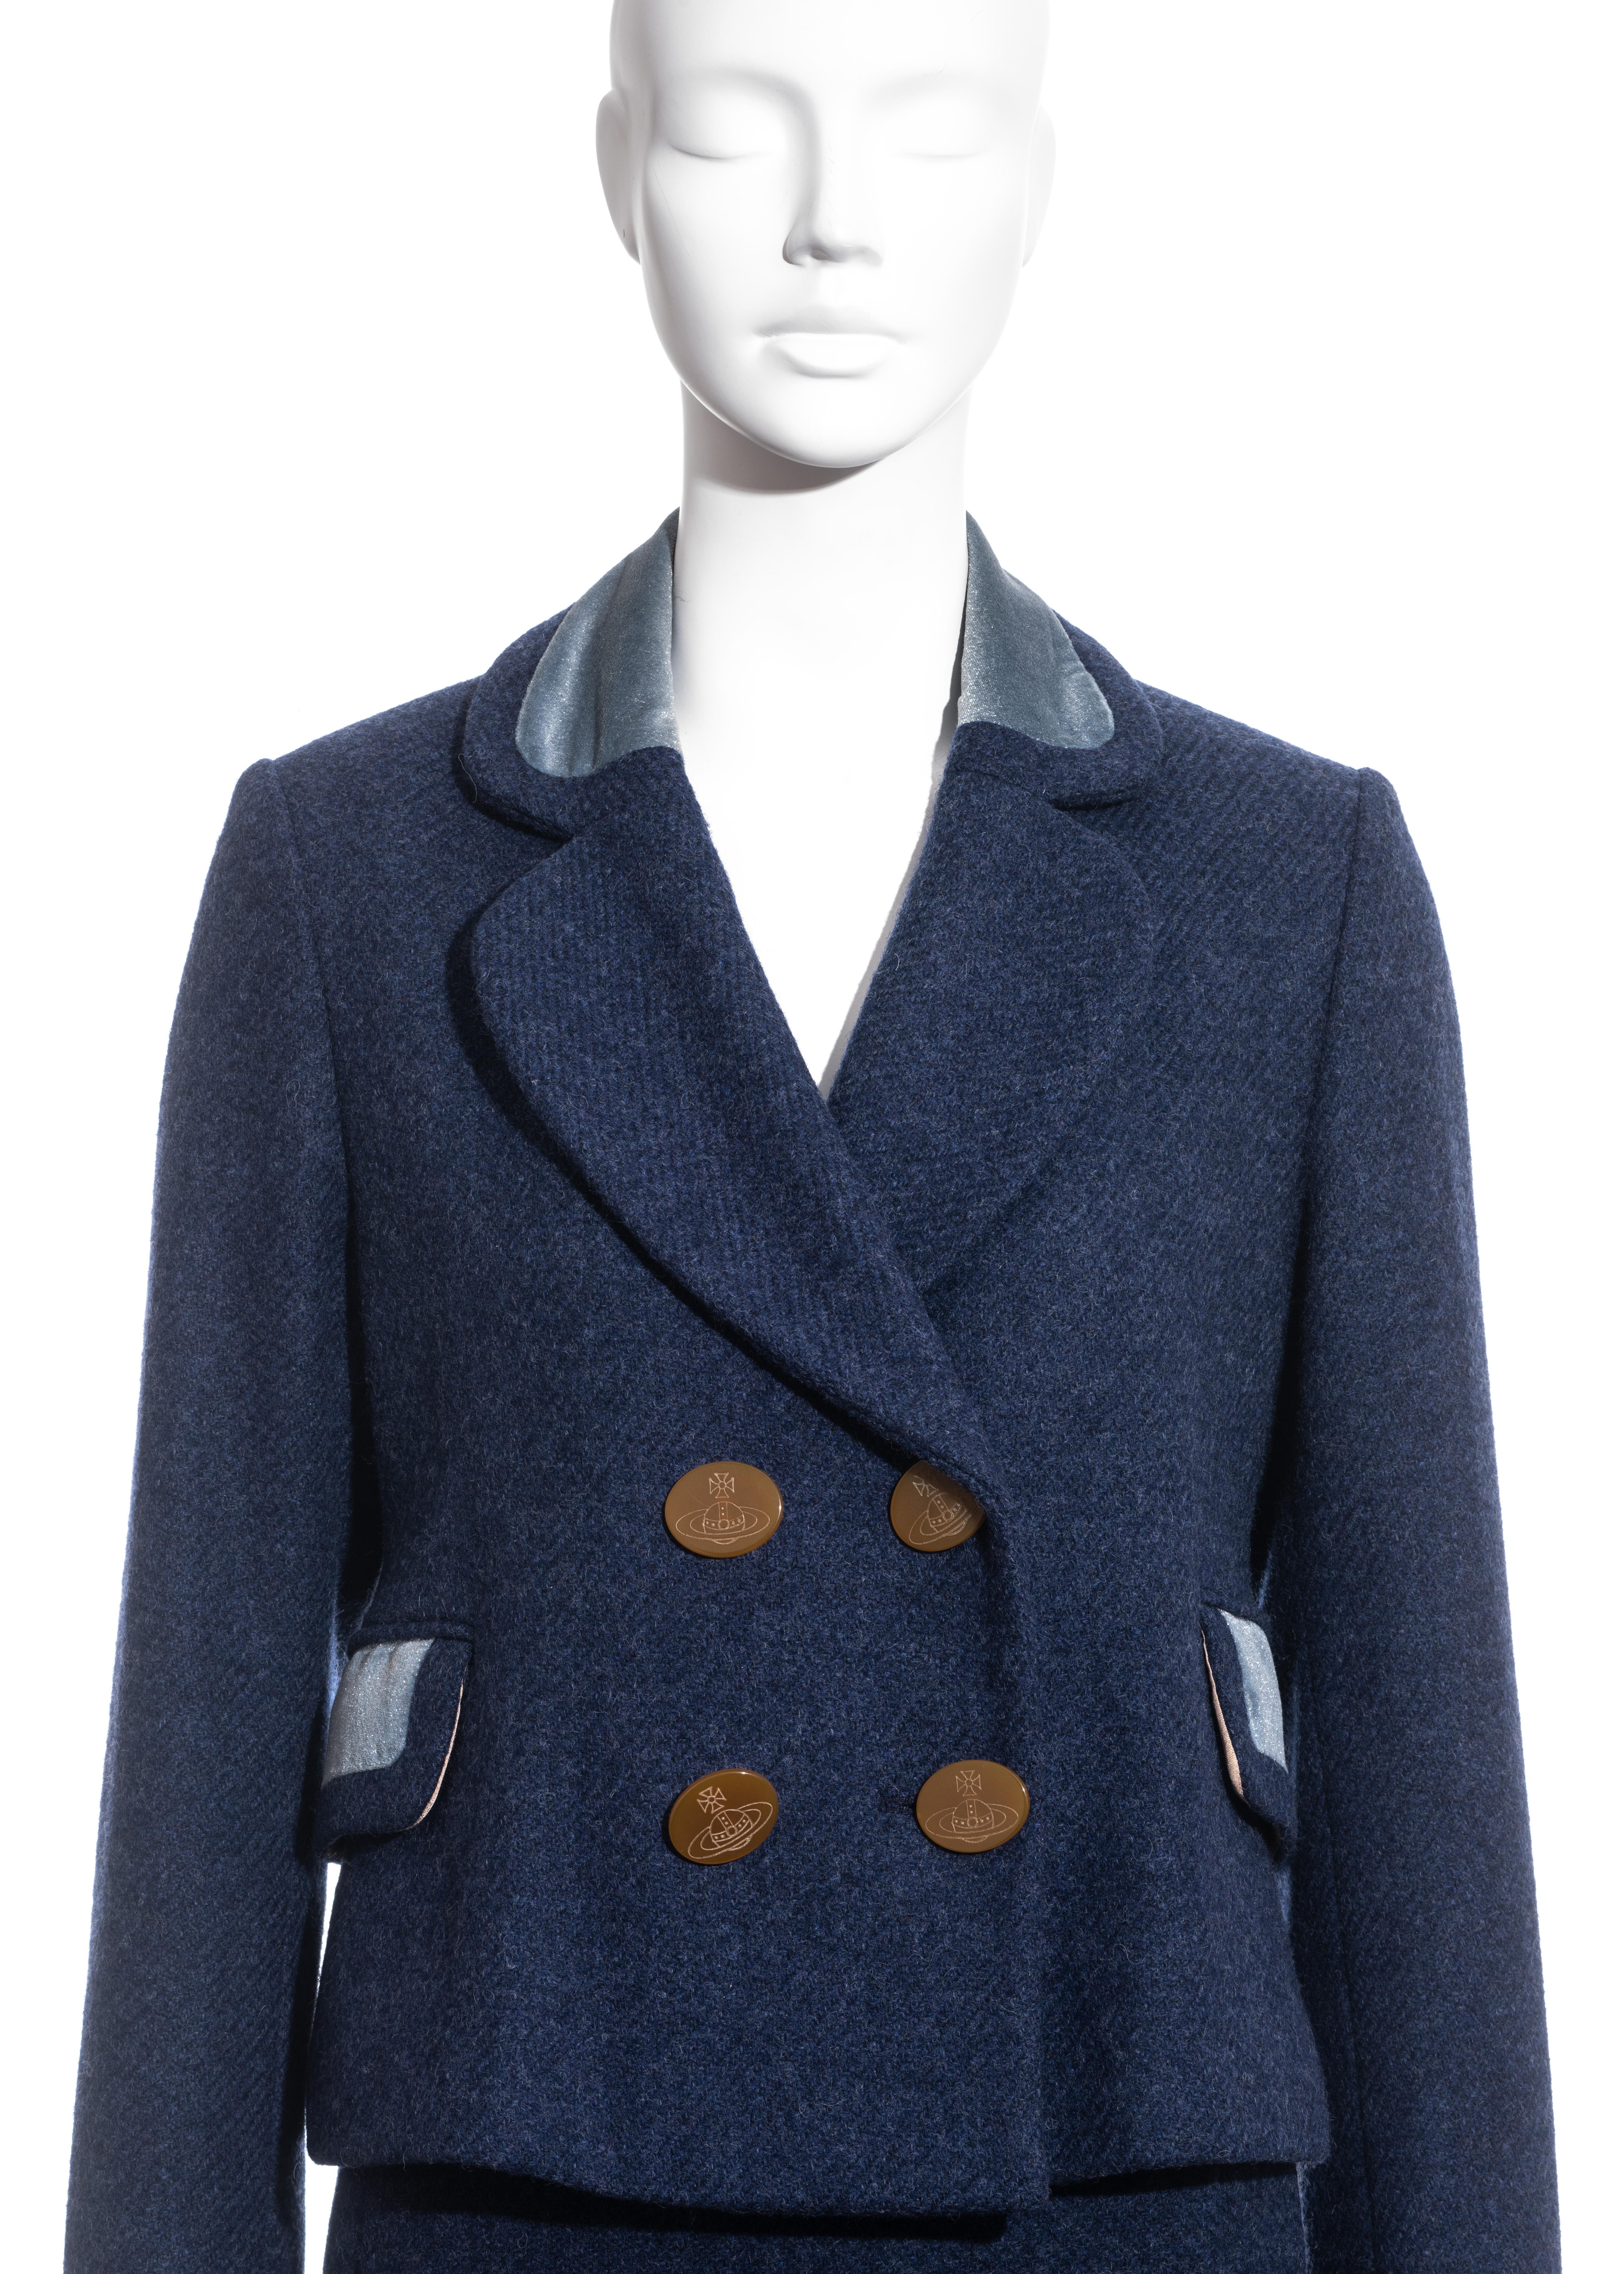 Black Vivienne Westwood blue tweed skirt suit, fw 1994 For Sale